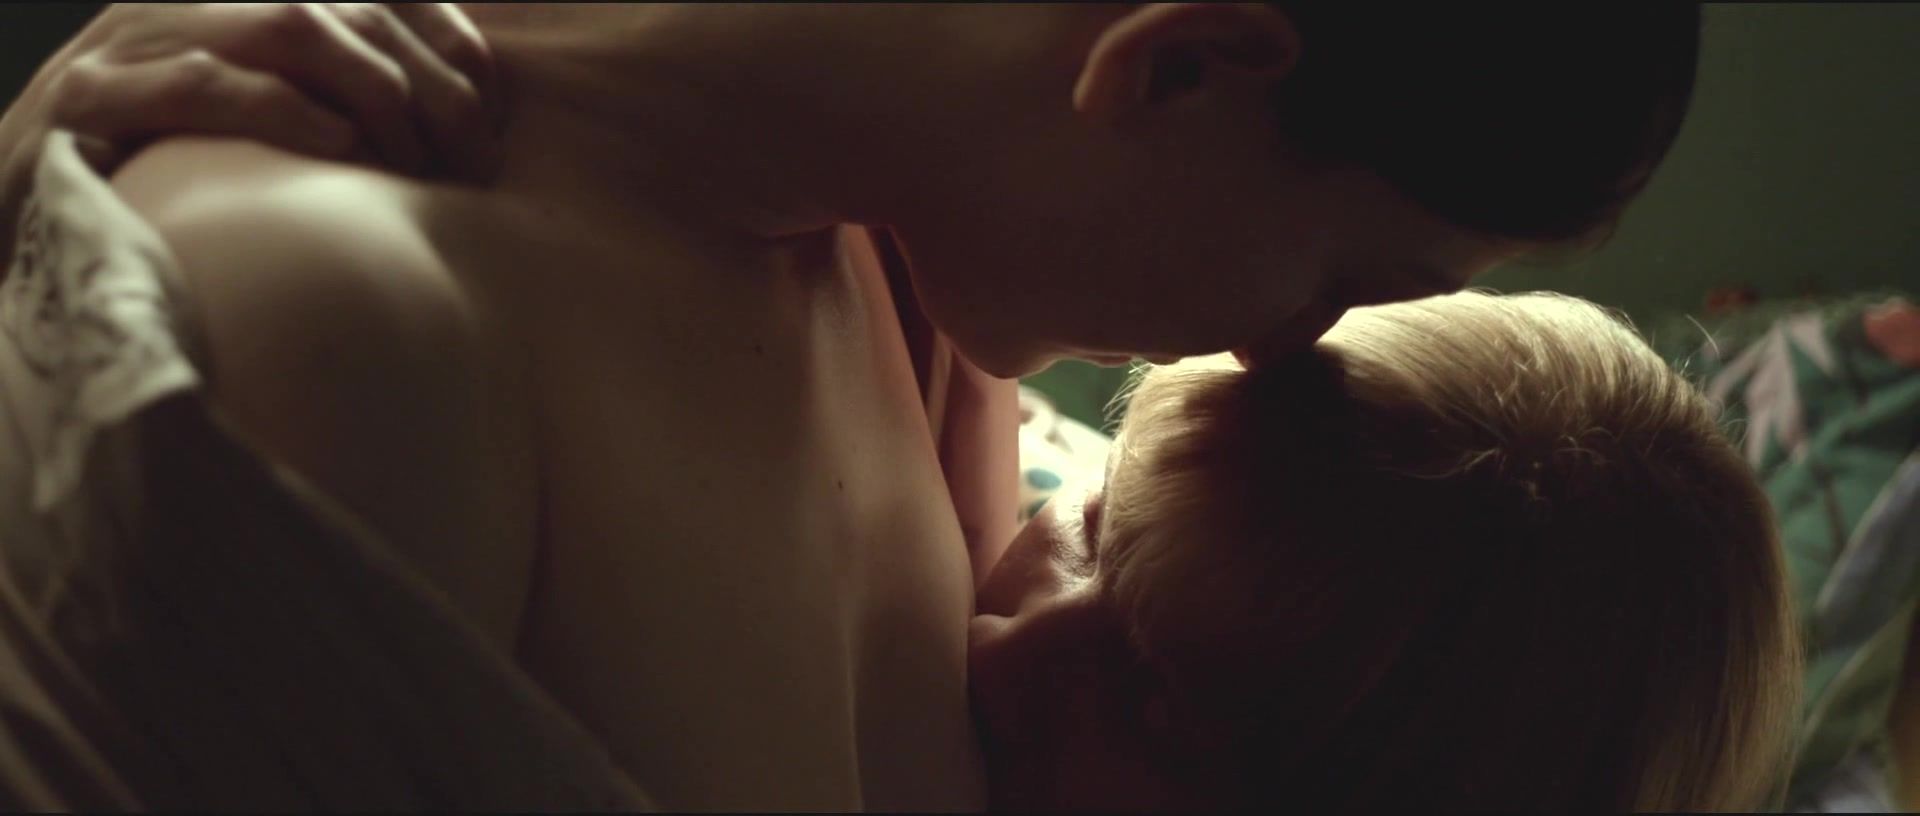 Camdolls Topless nude scene Oona von Maydell nackte - Der Bunker (2015) Making Love Porn